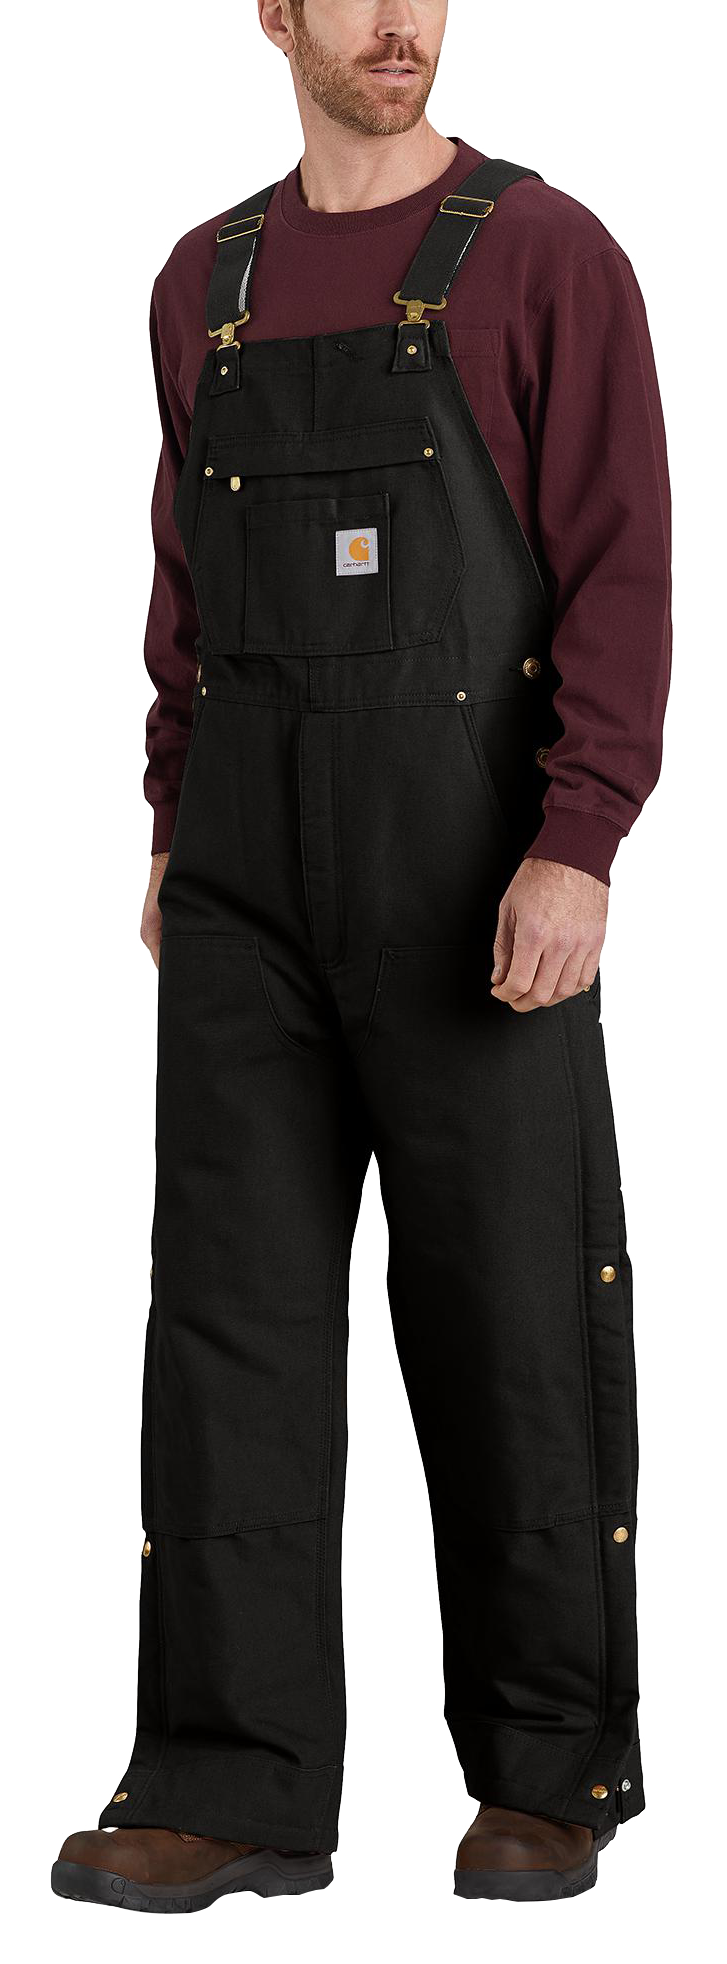 Carhartt insulated overalls men - Gem